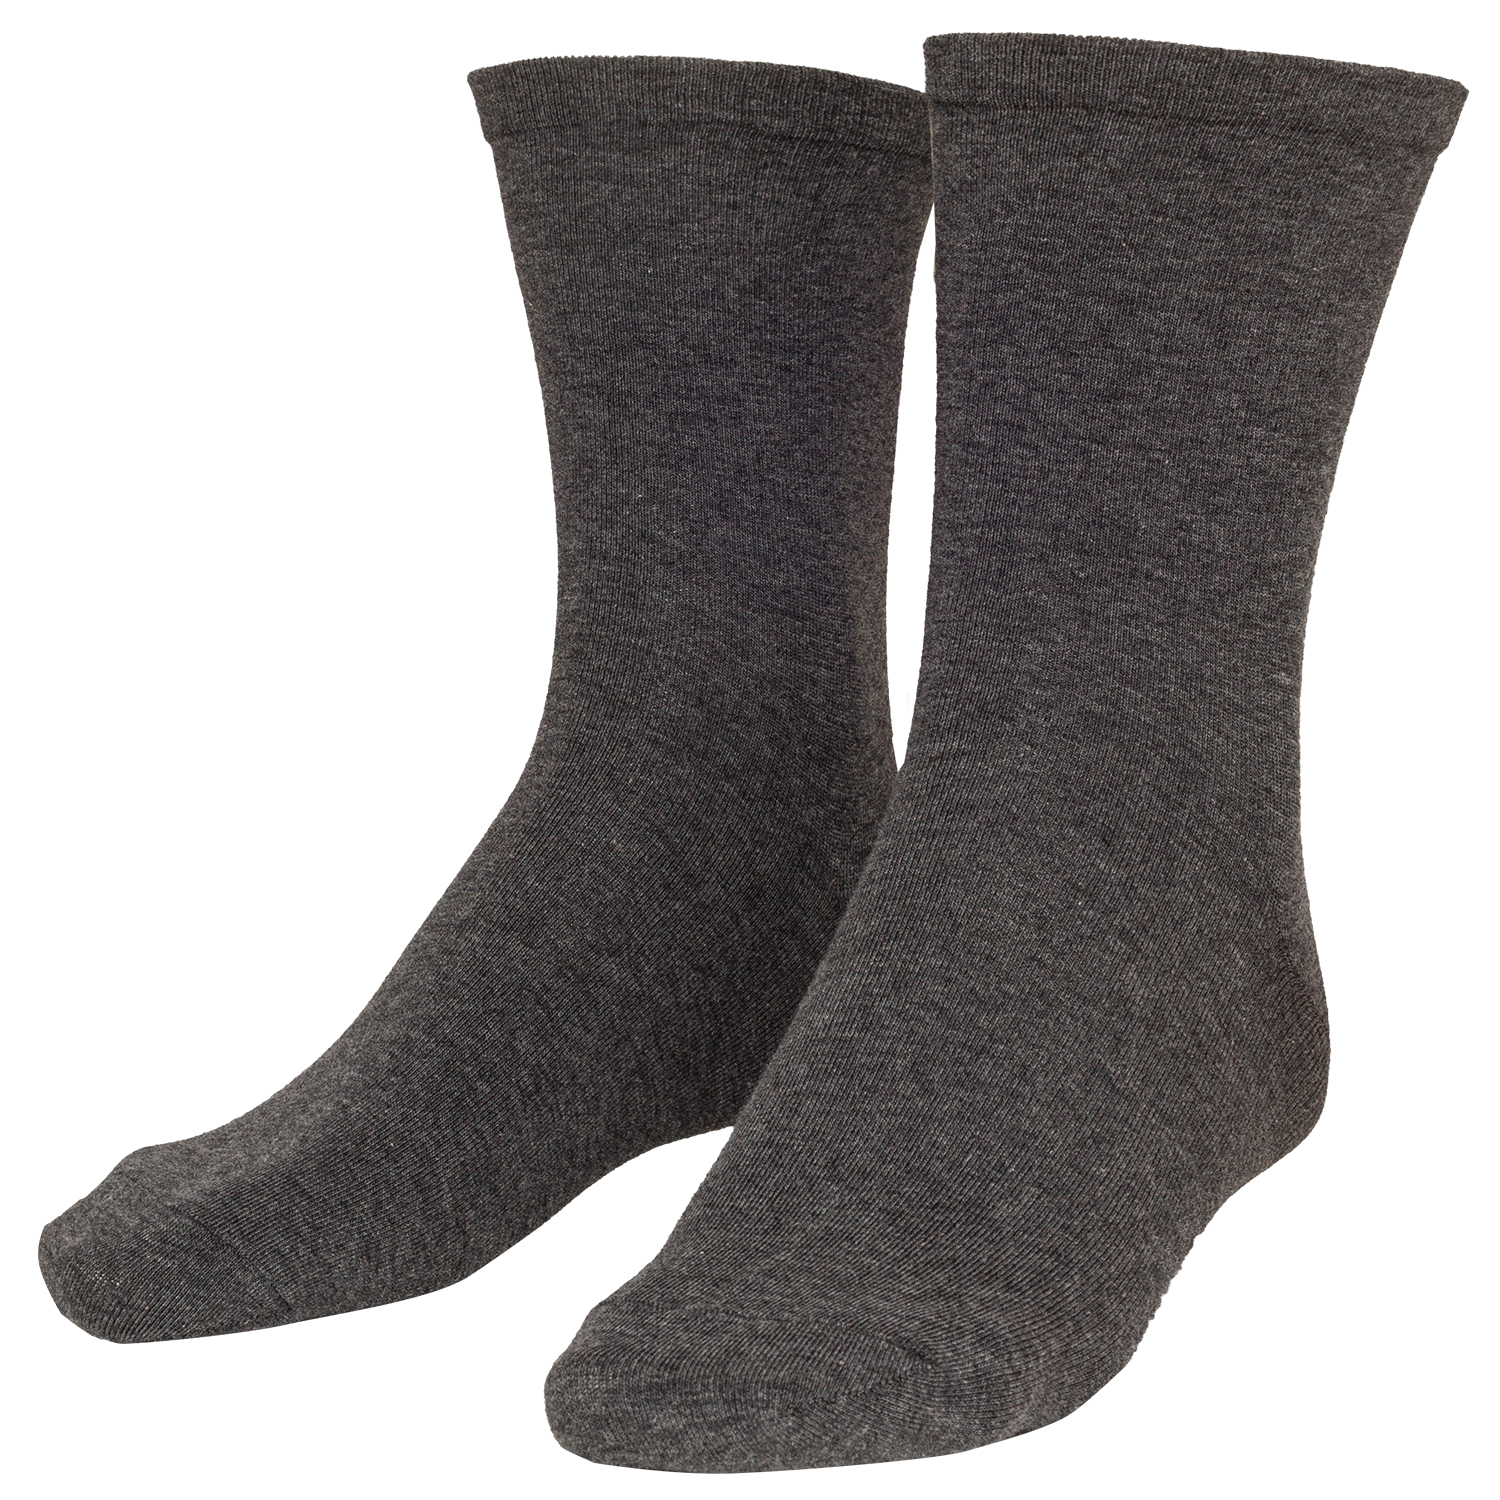 Socke sensitive in anthrazit meliert Herren im Doppelpack bis Größe 51/54